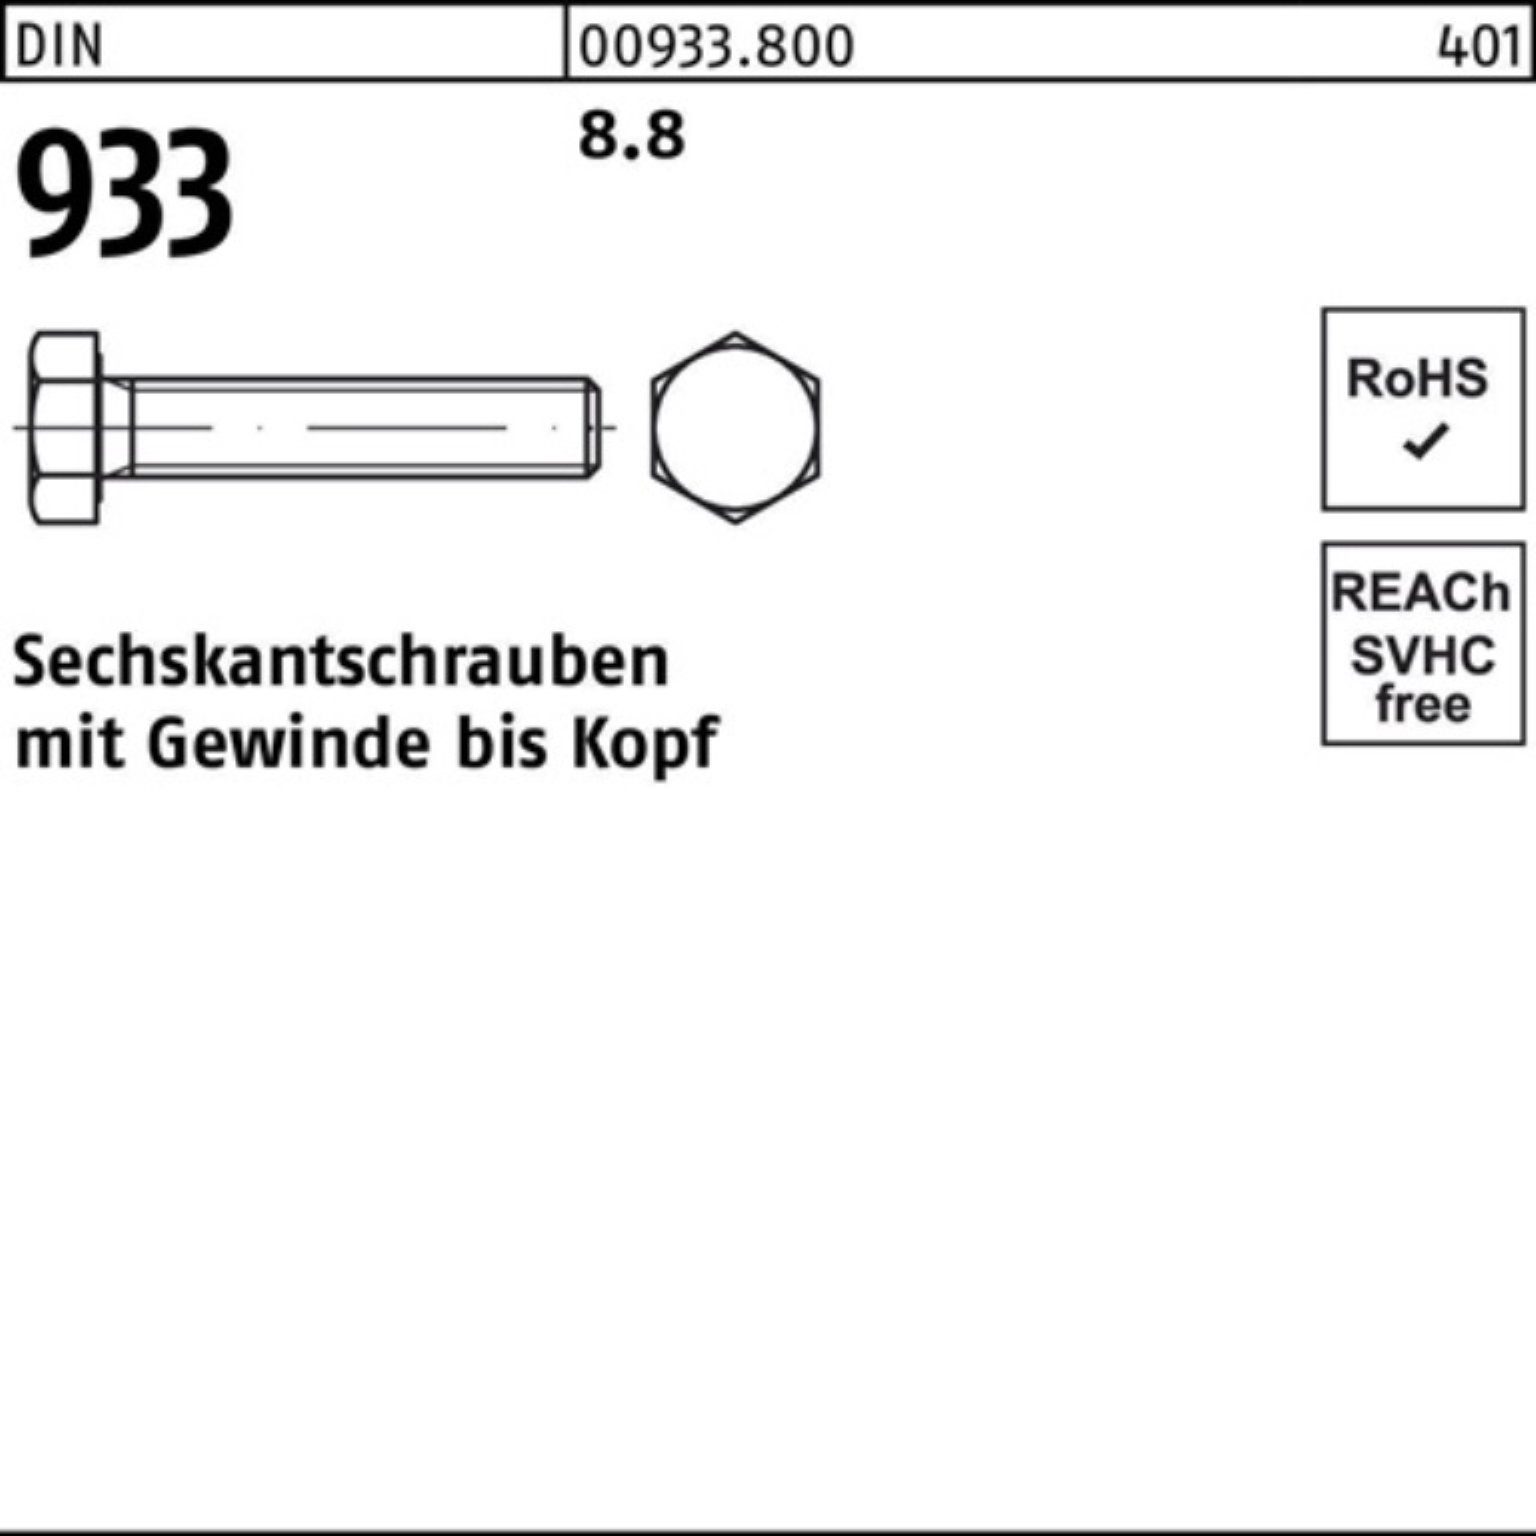 Reyher Sechskantschraube 200er Pack 70 M5x 933 8.8 VG 933 200 DIN Sechskantschraube DIN Stück